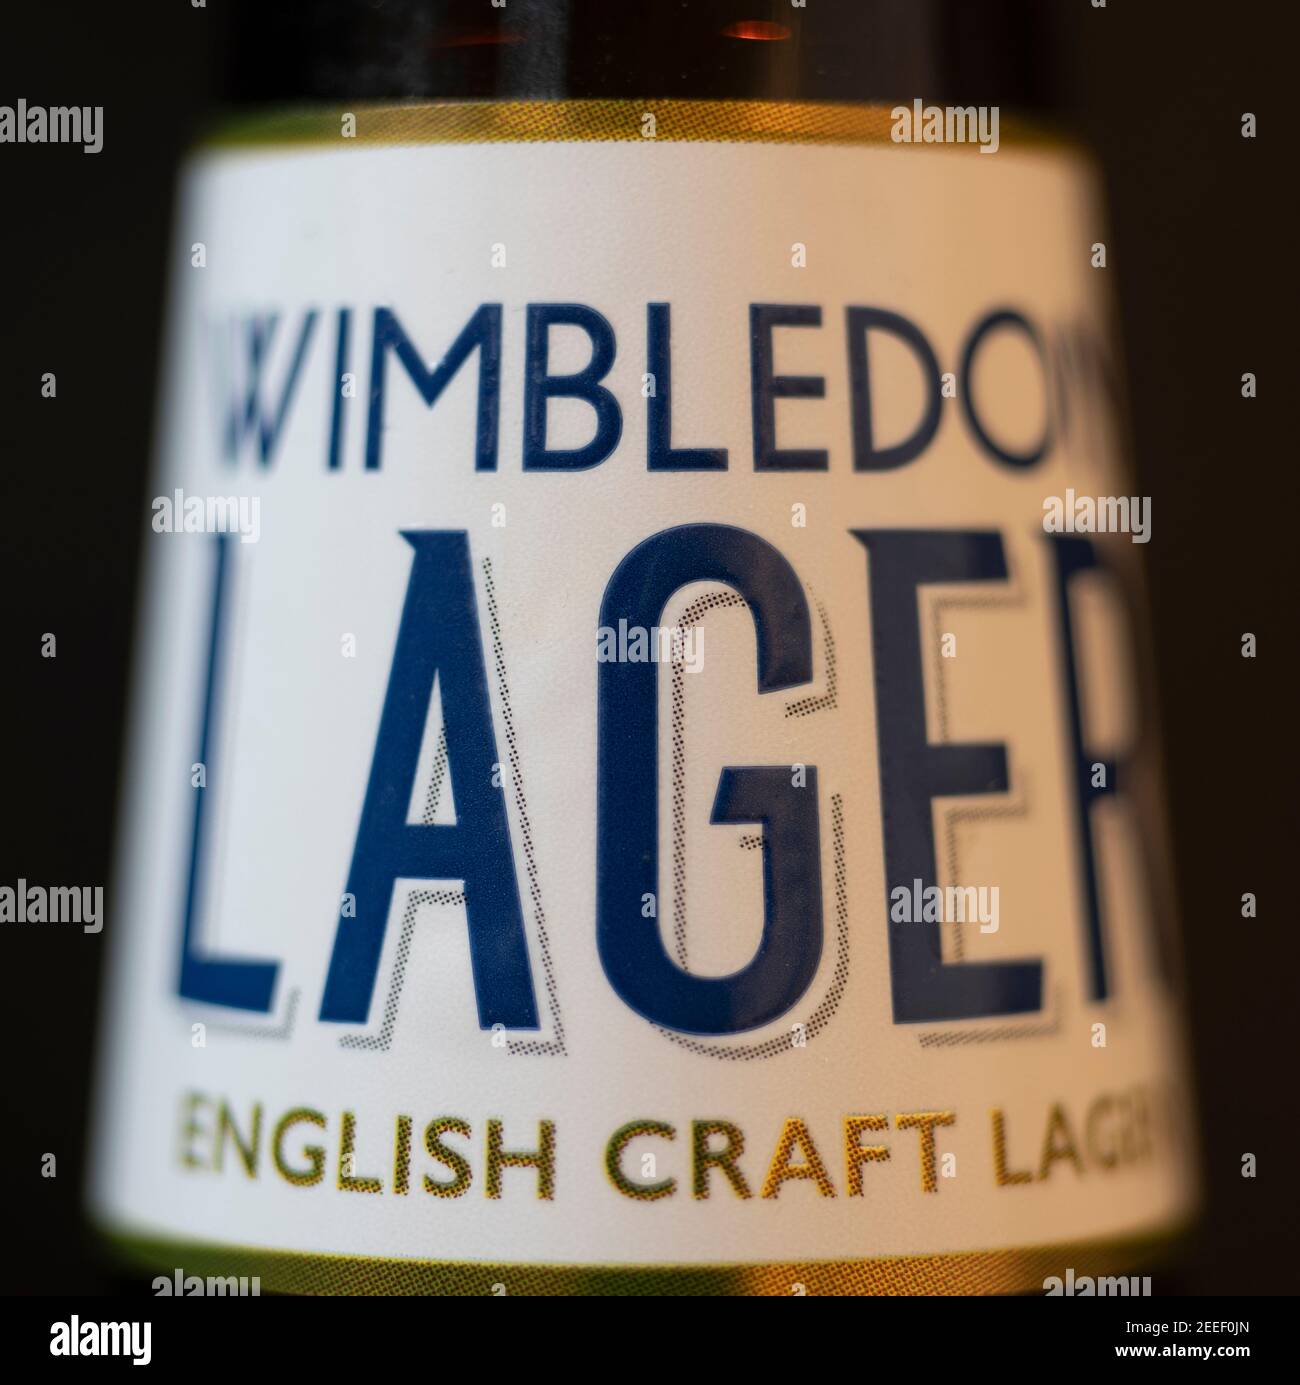 Wimbledon Italian Craft Lager birra bottiglia collo etichetta closeup Foto Stock